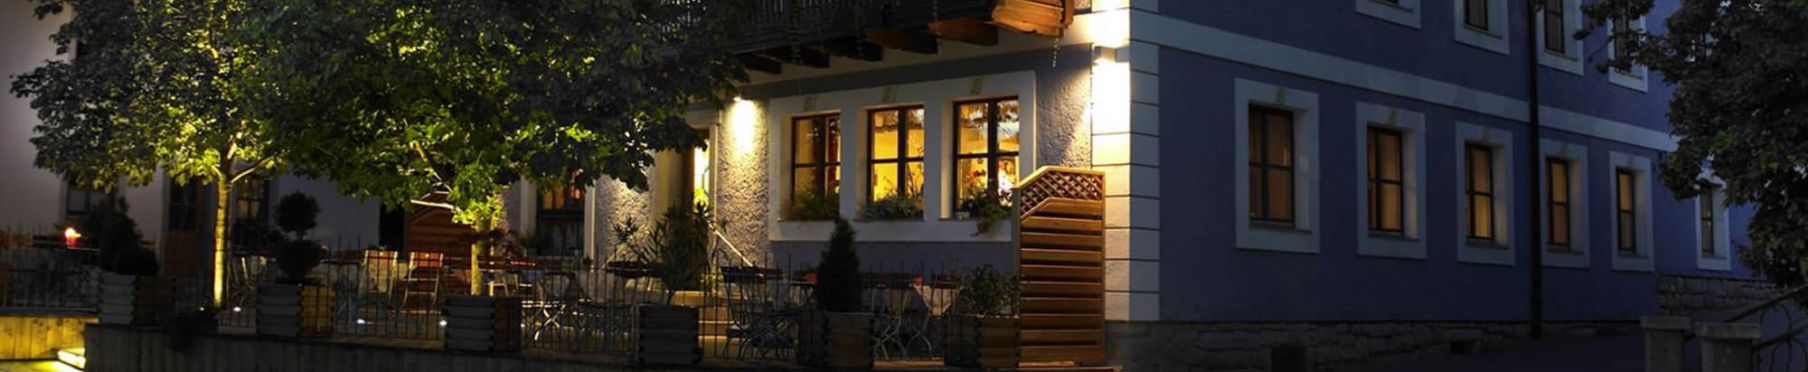 Restaurant und Landhotel in Bayern - Aussenansicht